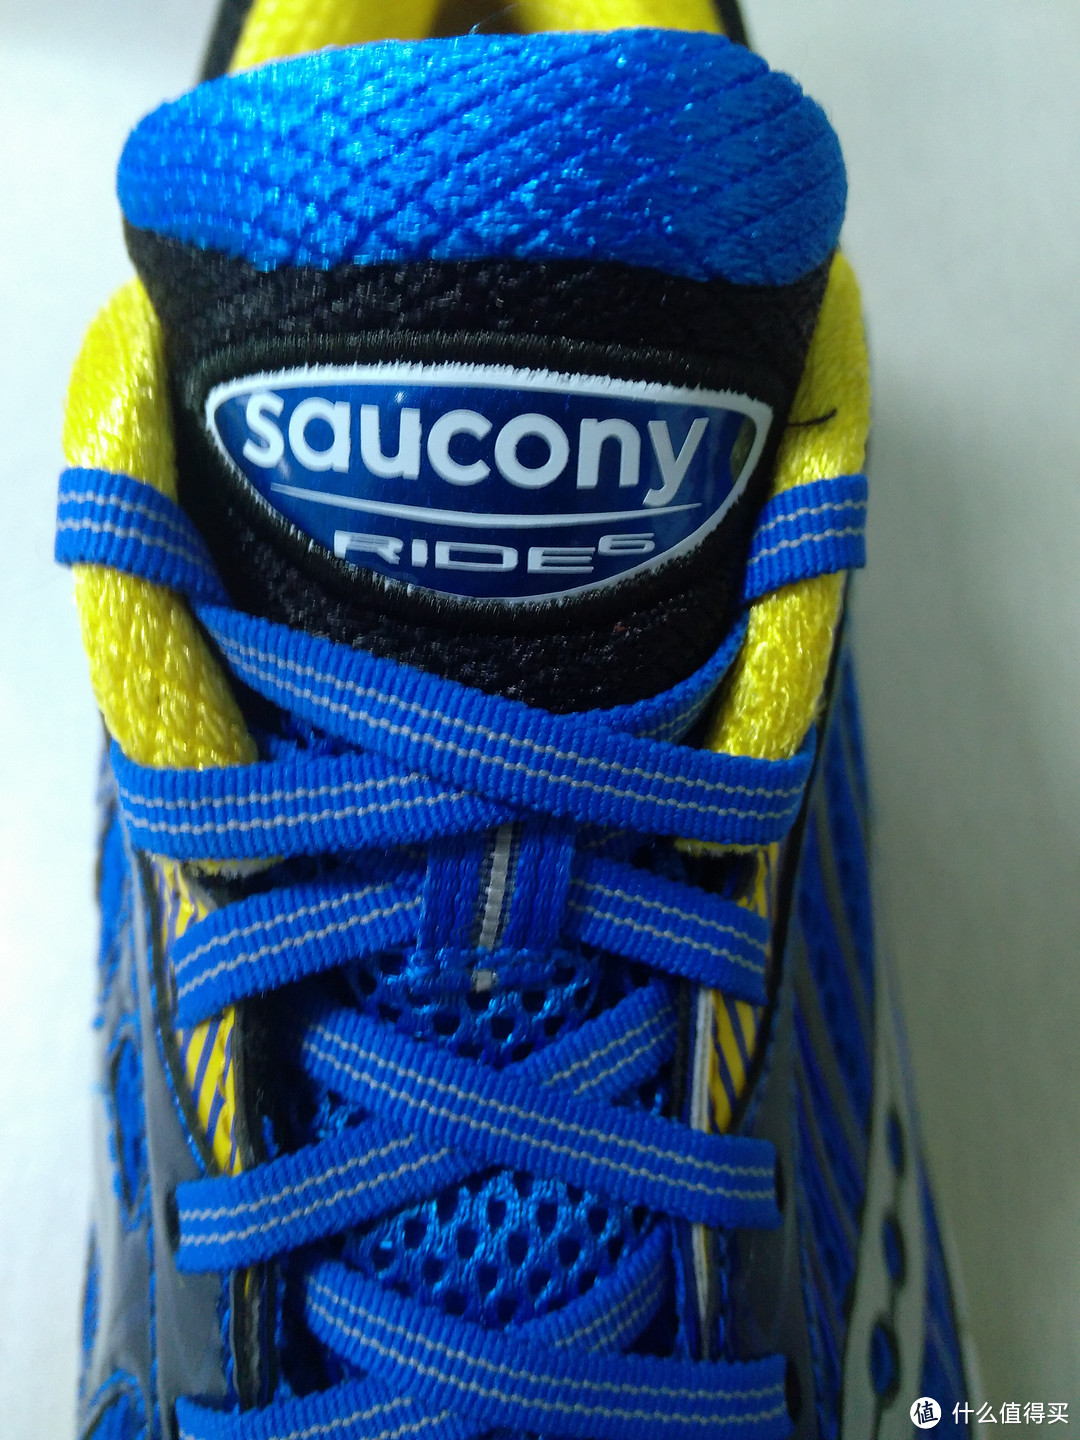 Saucony 索康尼 Ride 6 男款次*级缓震系跑鞋 尺码及穿着体验